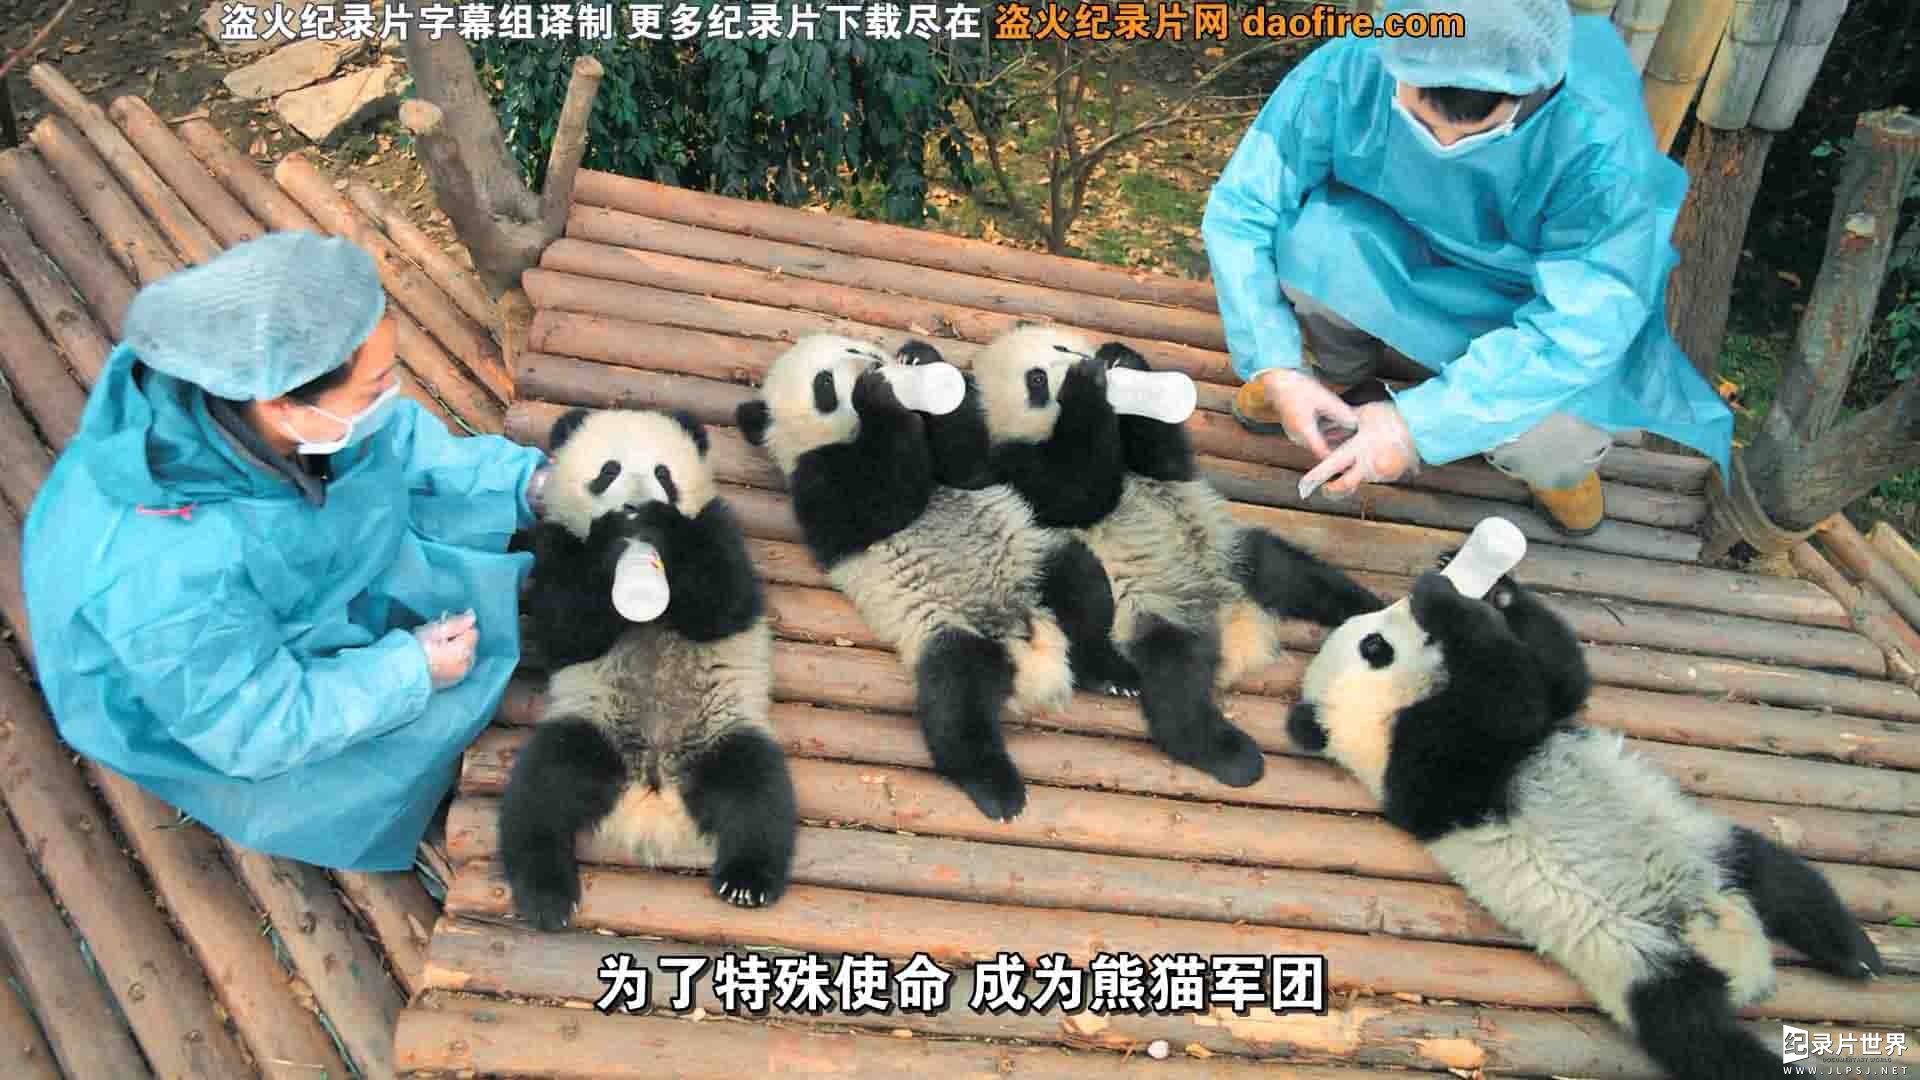 IMAX纪录片《大熊猫 Pandas 2018》全1集 